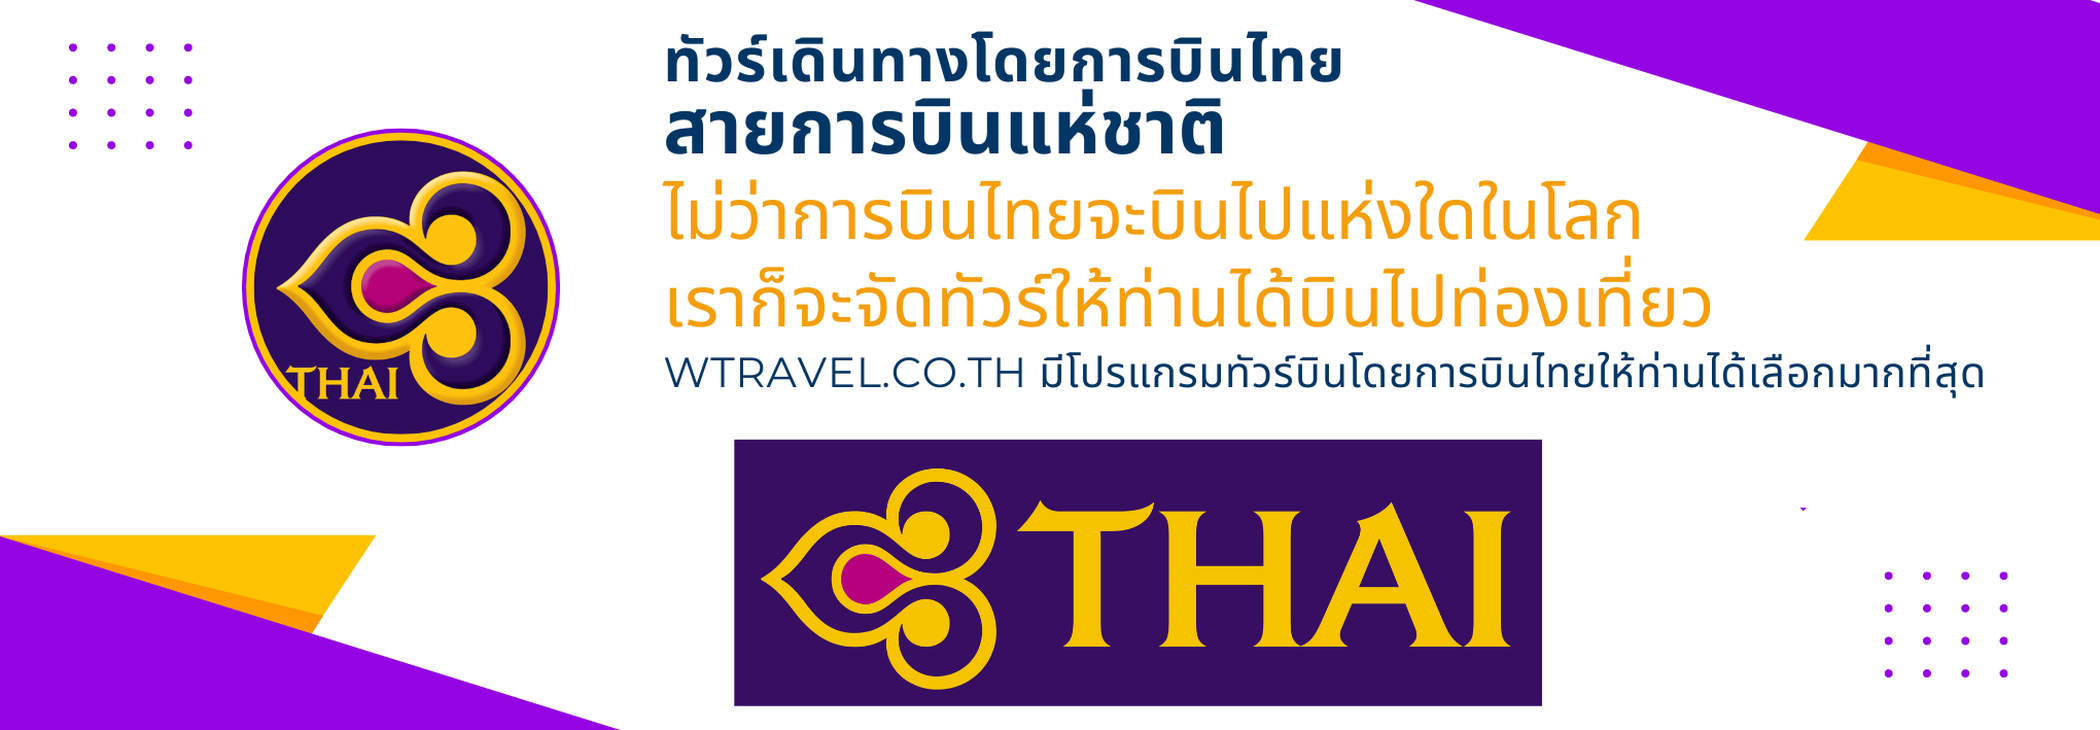 รวมทัวร์เดินทางโดยการบินไทย สายการบินแห่งชาติ